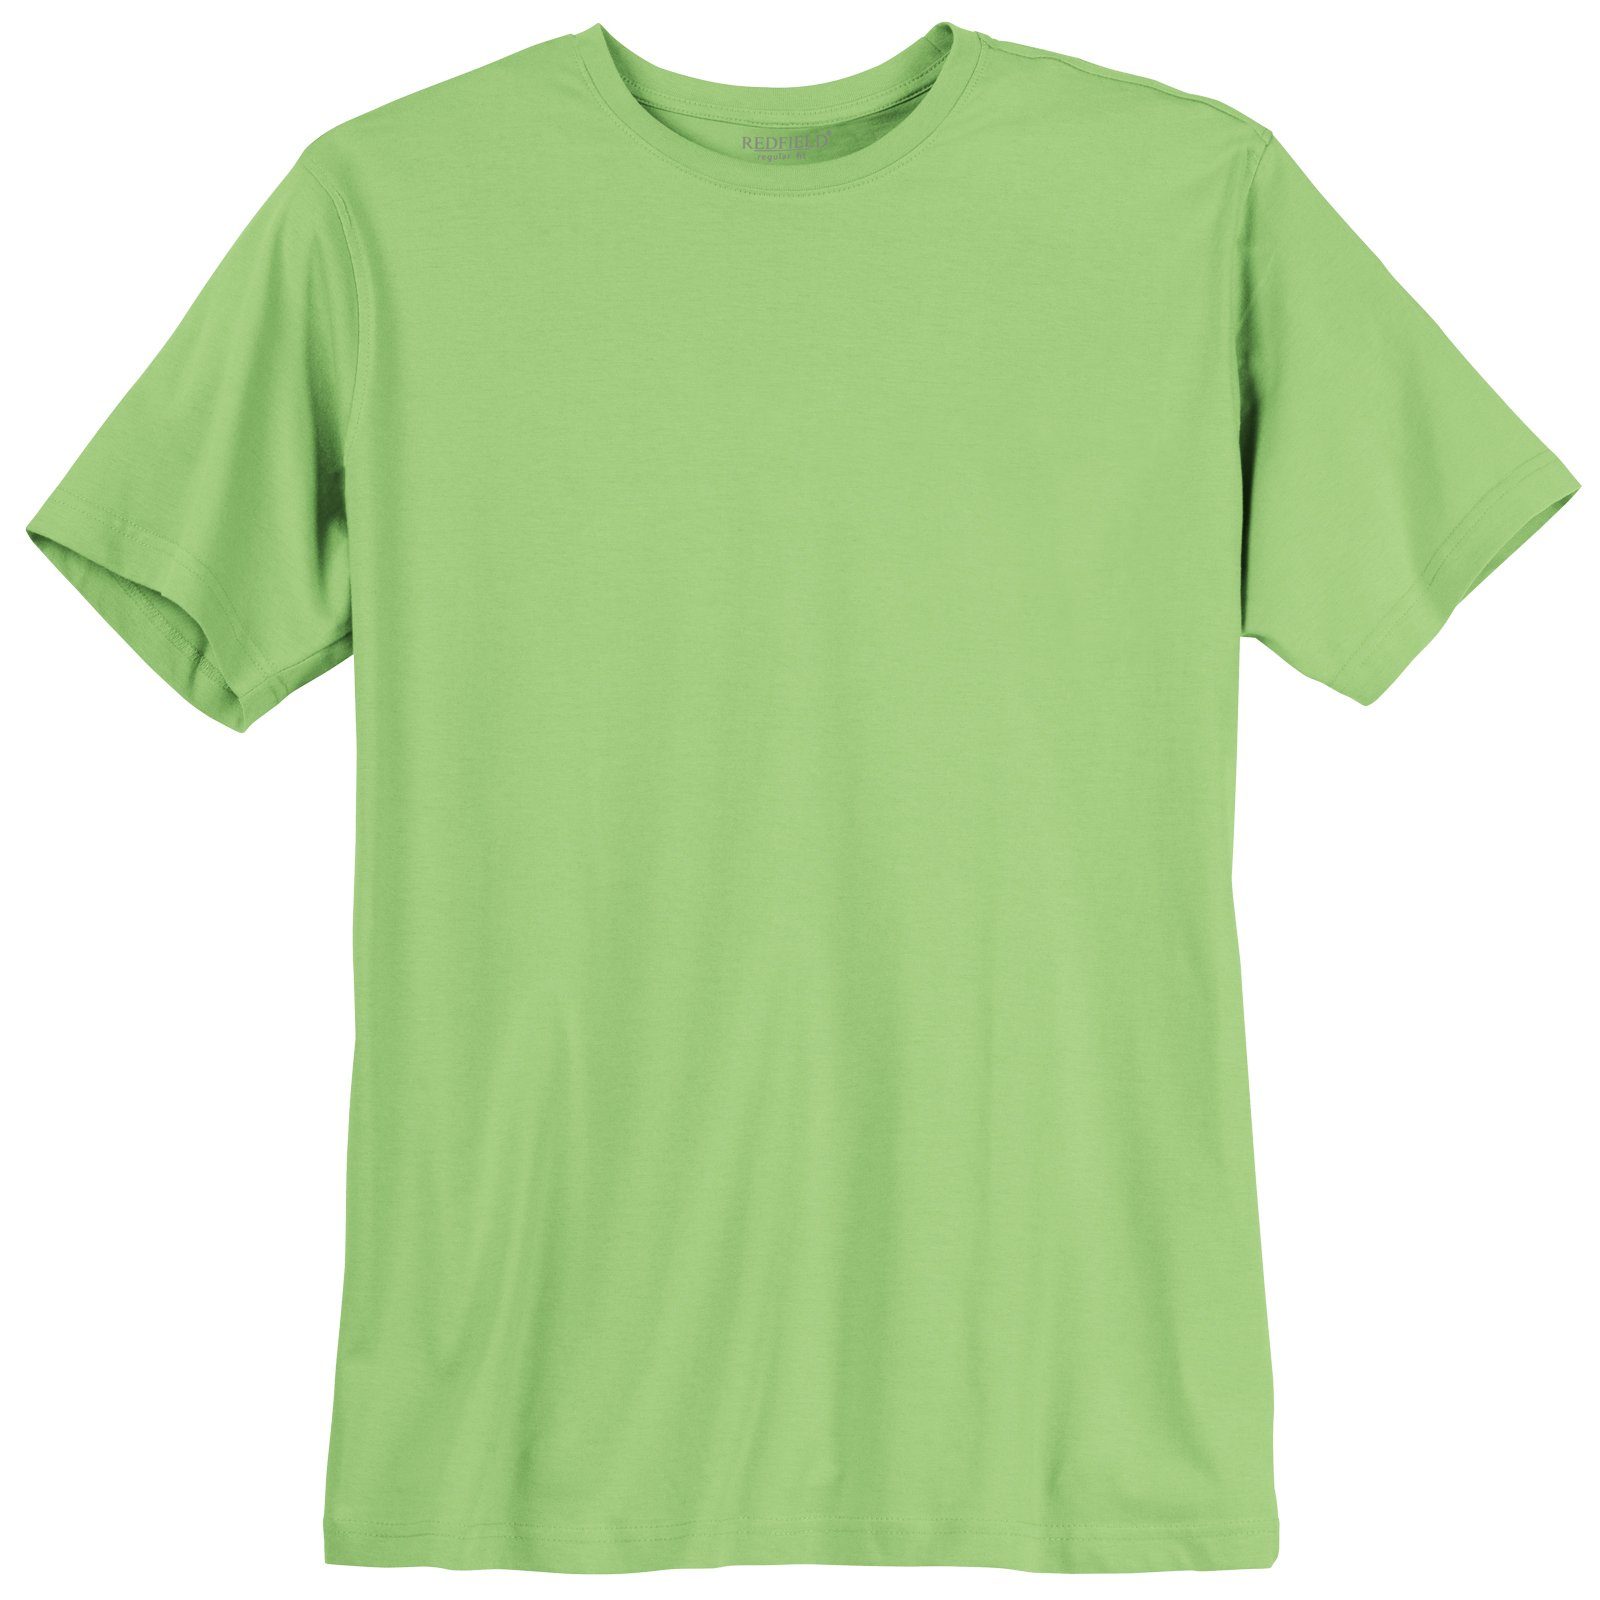 Größen redfield Herren Basic hellgrün Große Redfield T-Shirt Rundhalsshirt